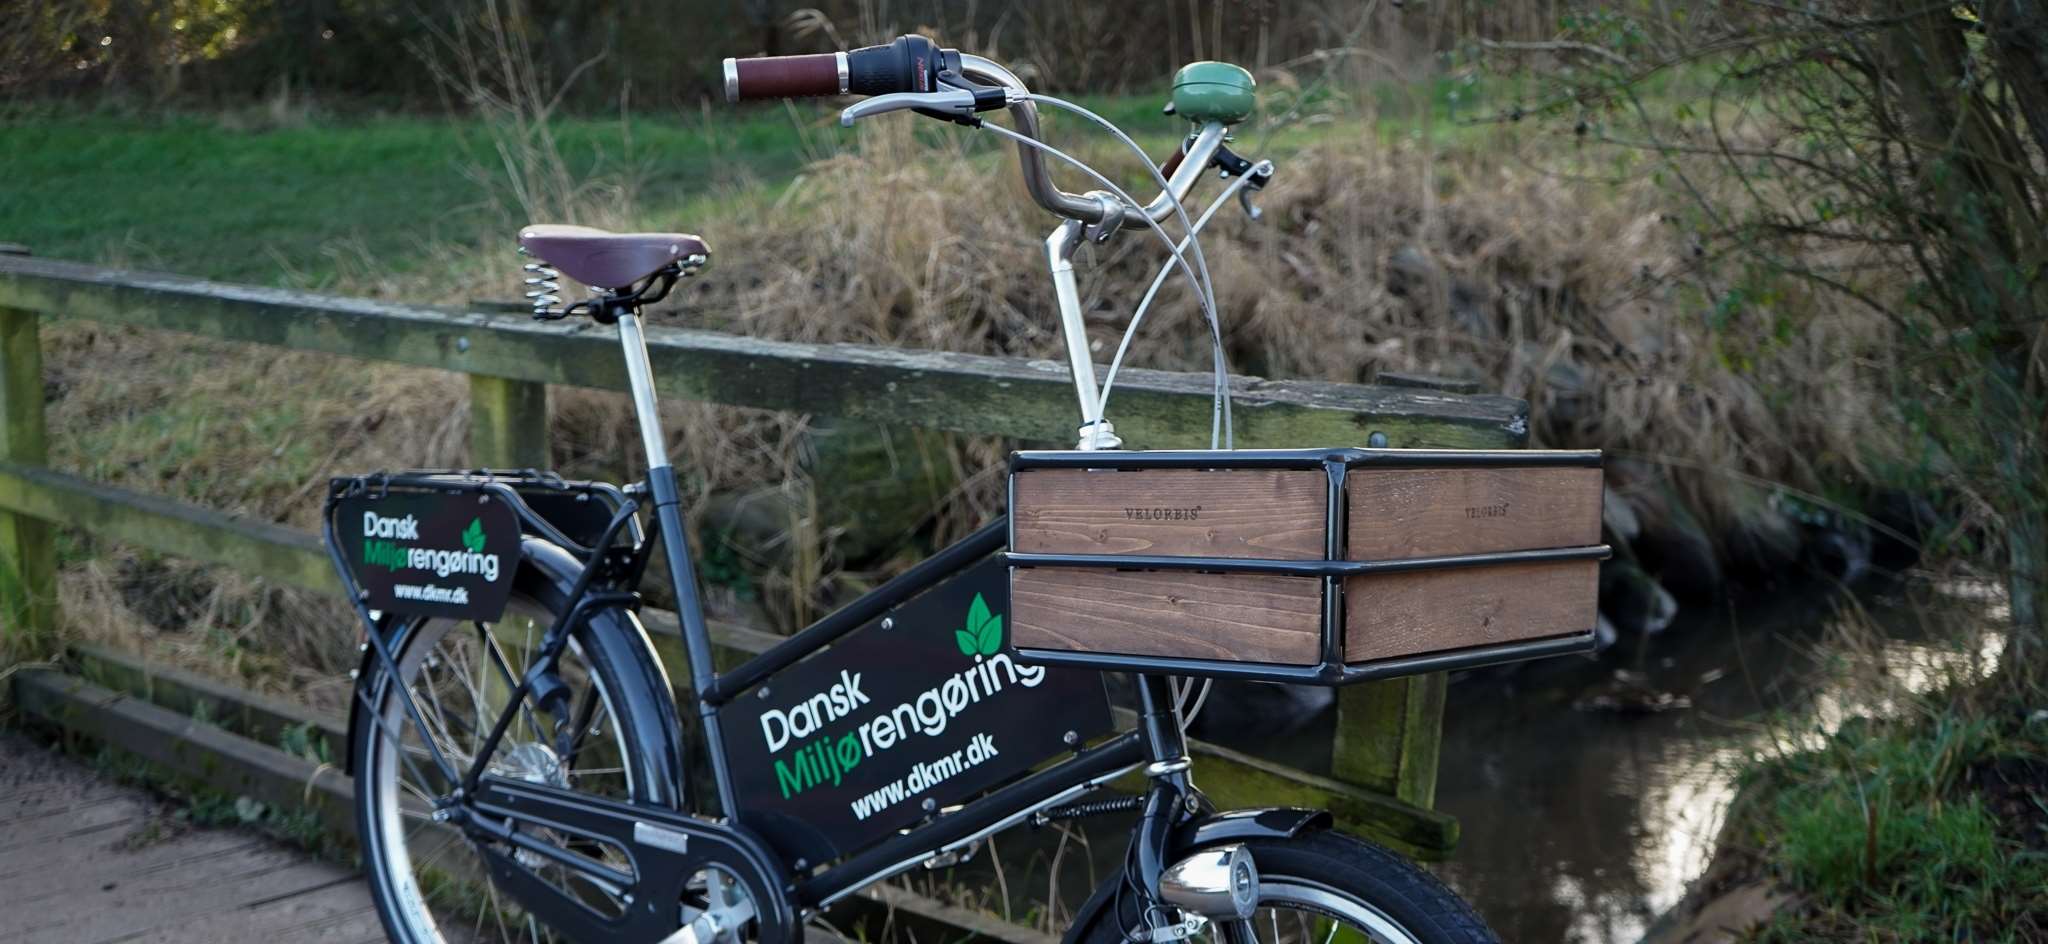 Dansk Miljørengøring, velorbis, cykel, bæredygtighed, miljørigtig rengøring